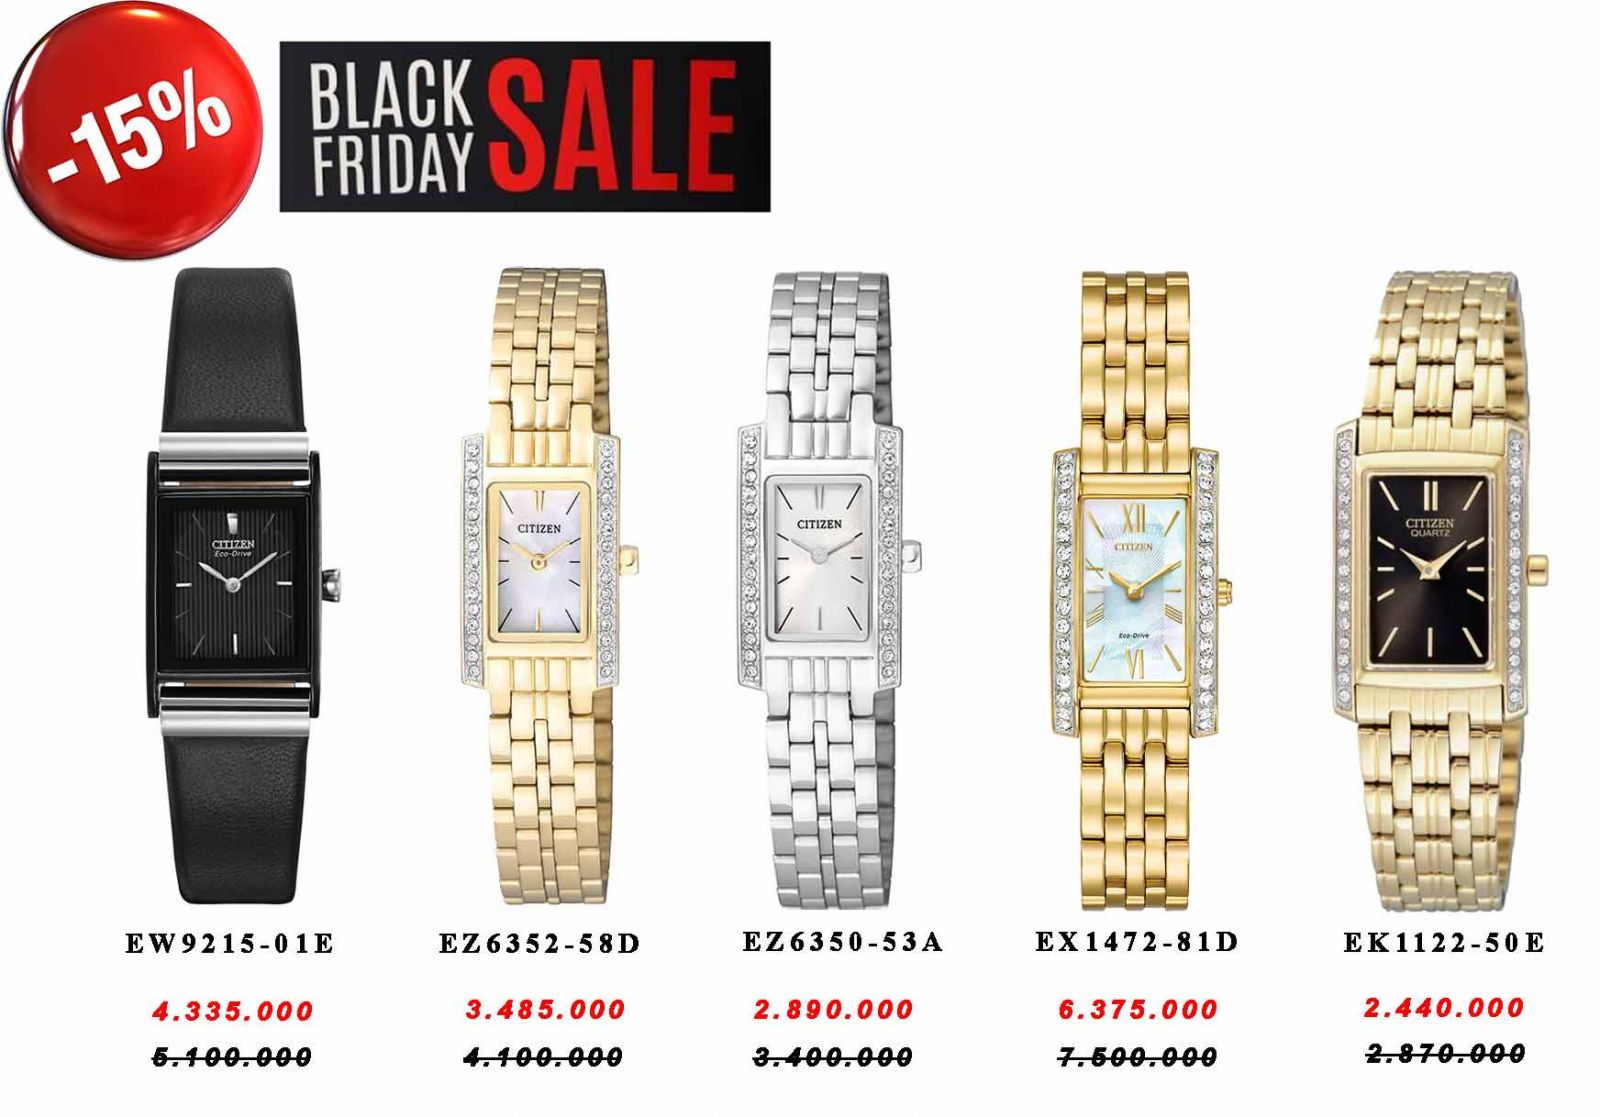 Black Friday 2017 giảm giá từ 15 - 20% tất cả sản phẩm đồng hồ đeo tay chính hàng